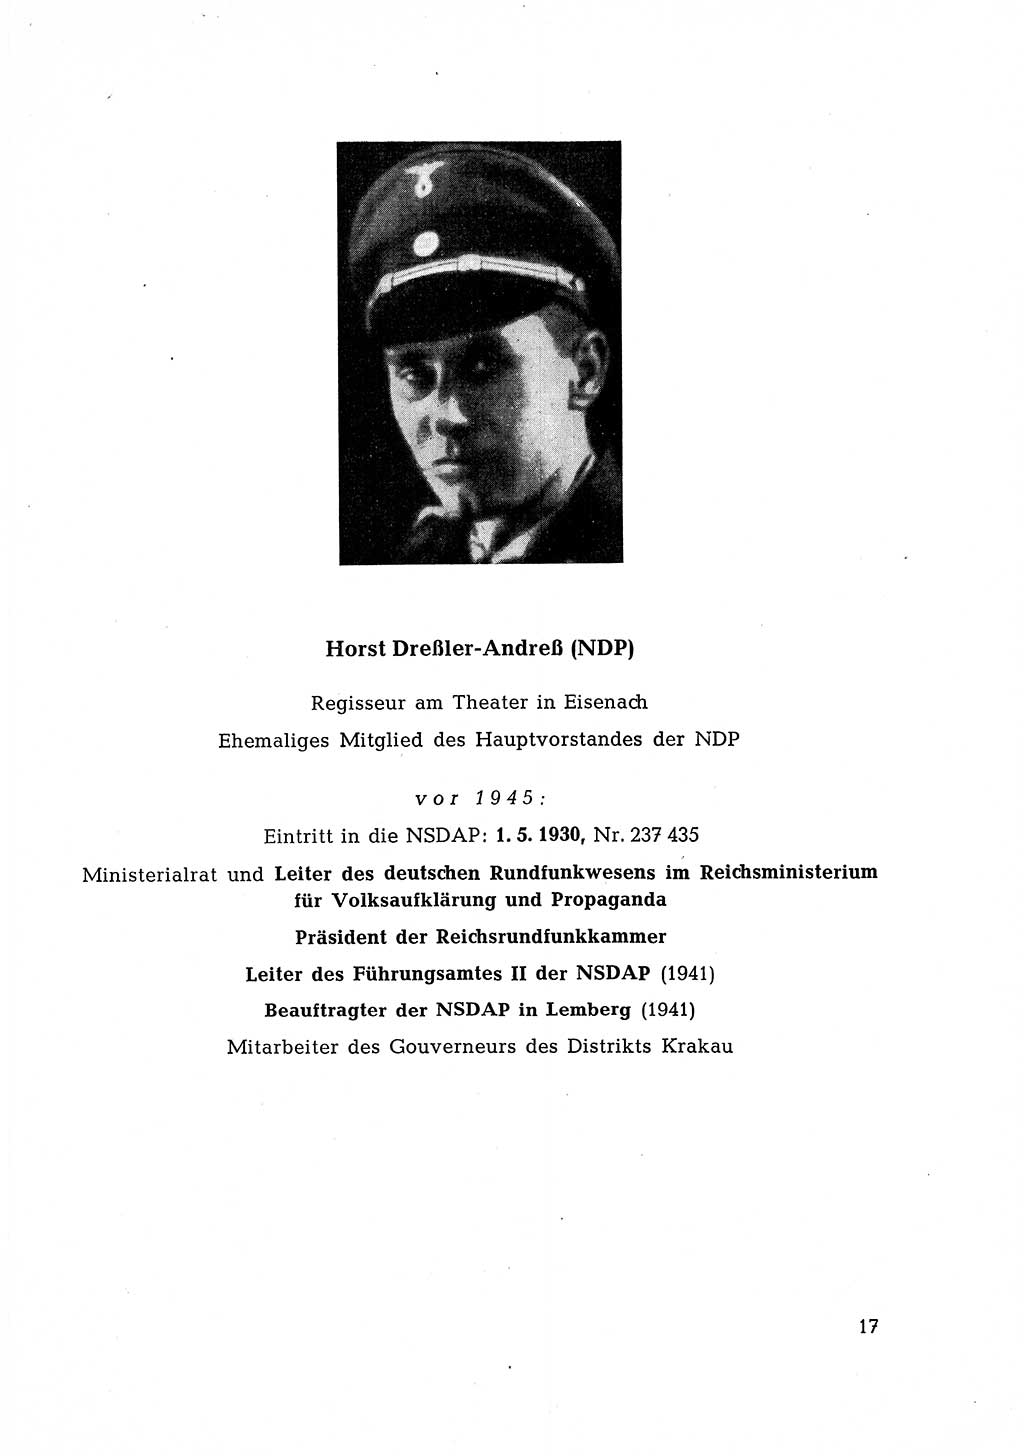 Ehemalige Nationalsozialisten in Pankows Diensten [Deutsche Demokratische Republik (DDR)] 1965, Seite 17 (Ehem. Nat.-Soz. DDR 1965, S. 17)